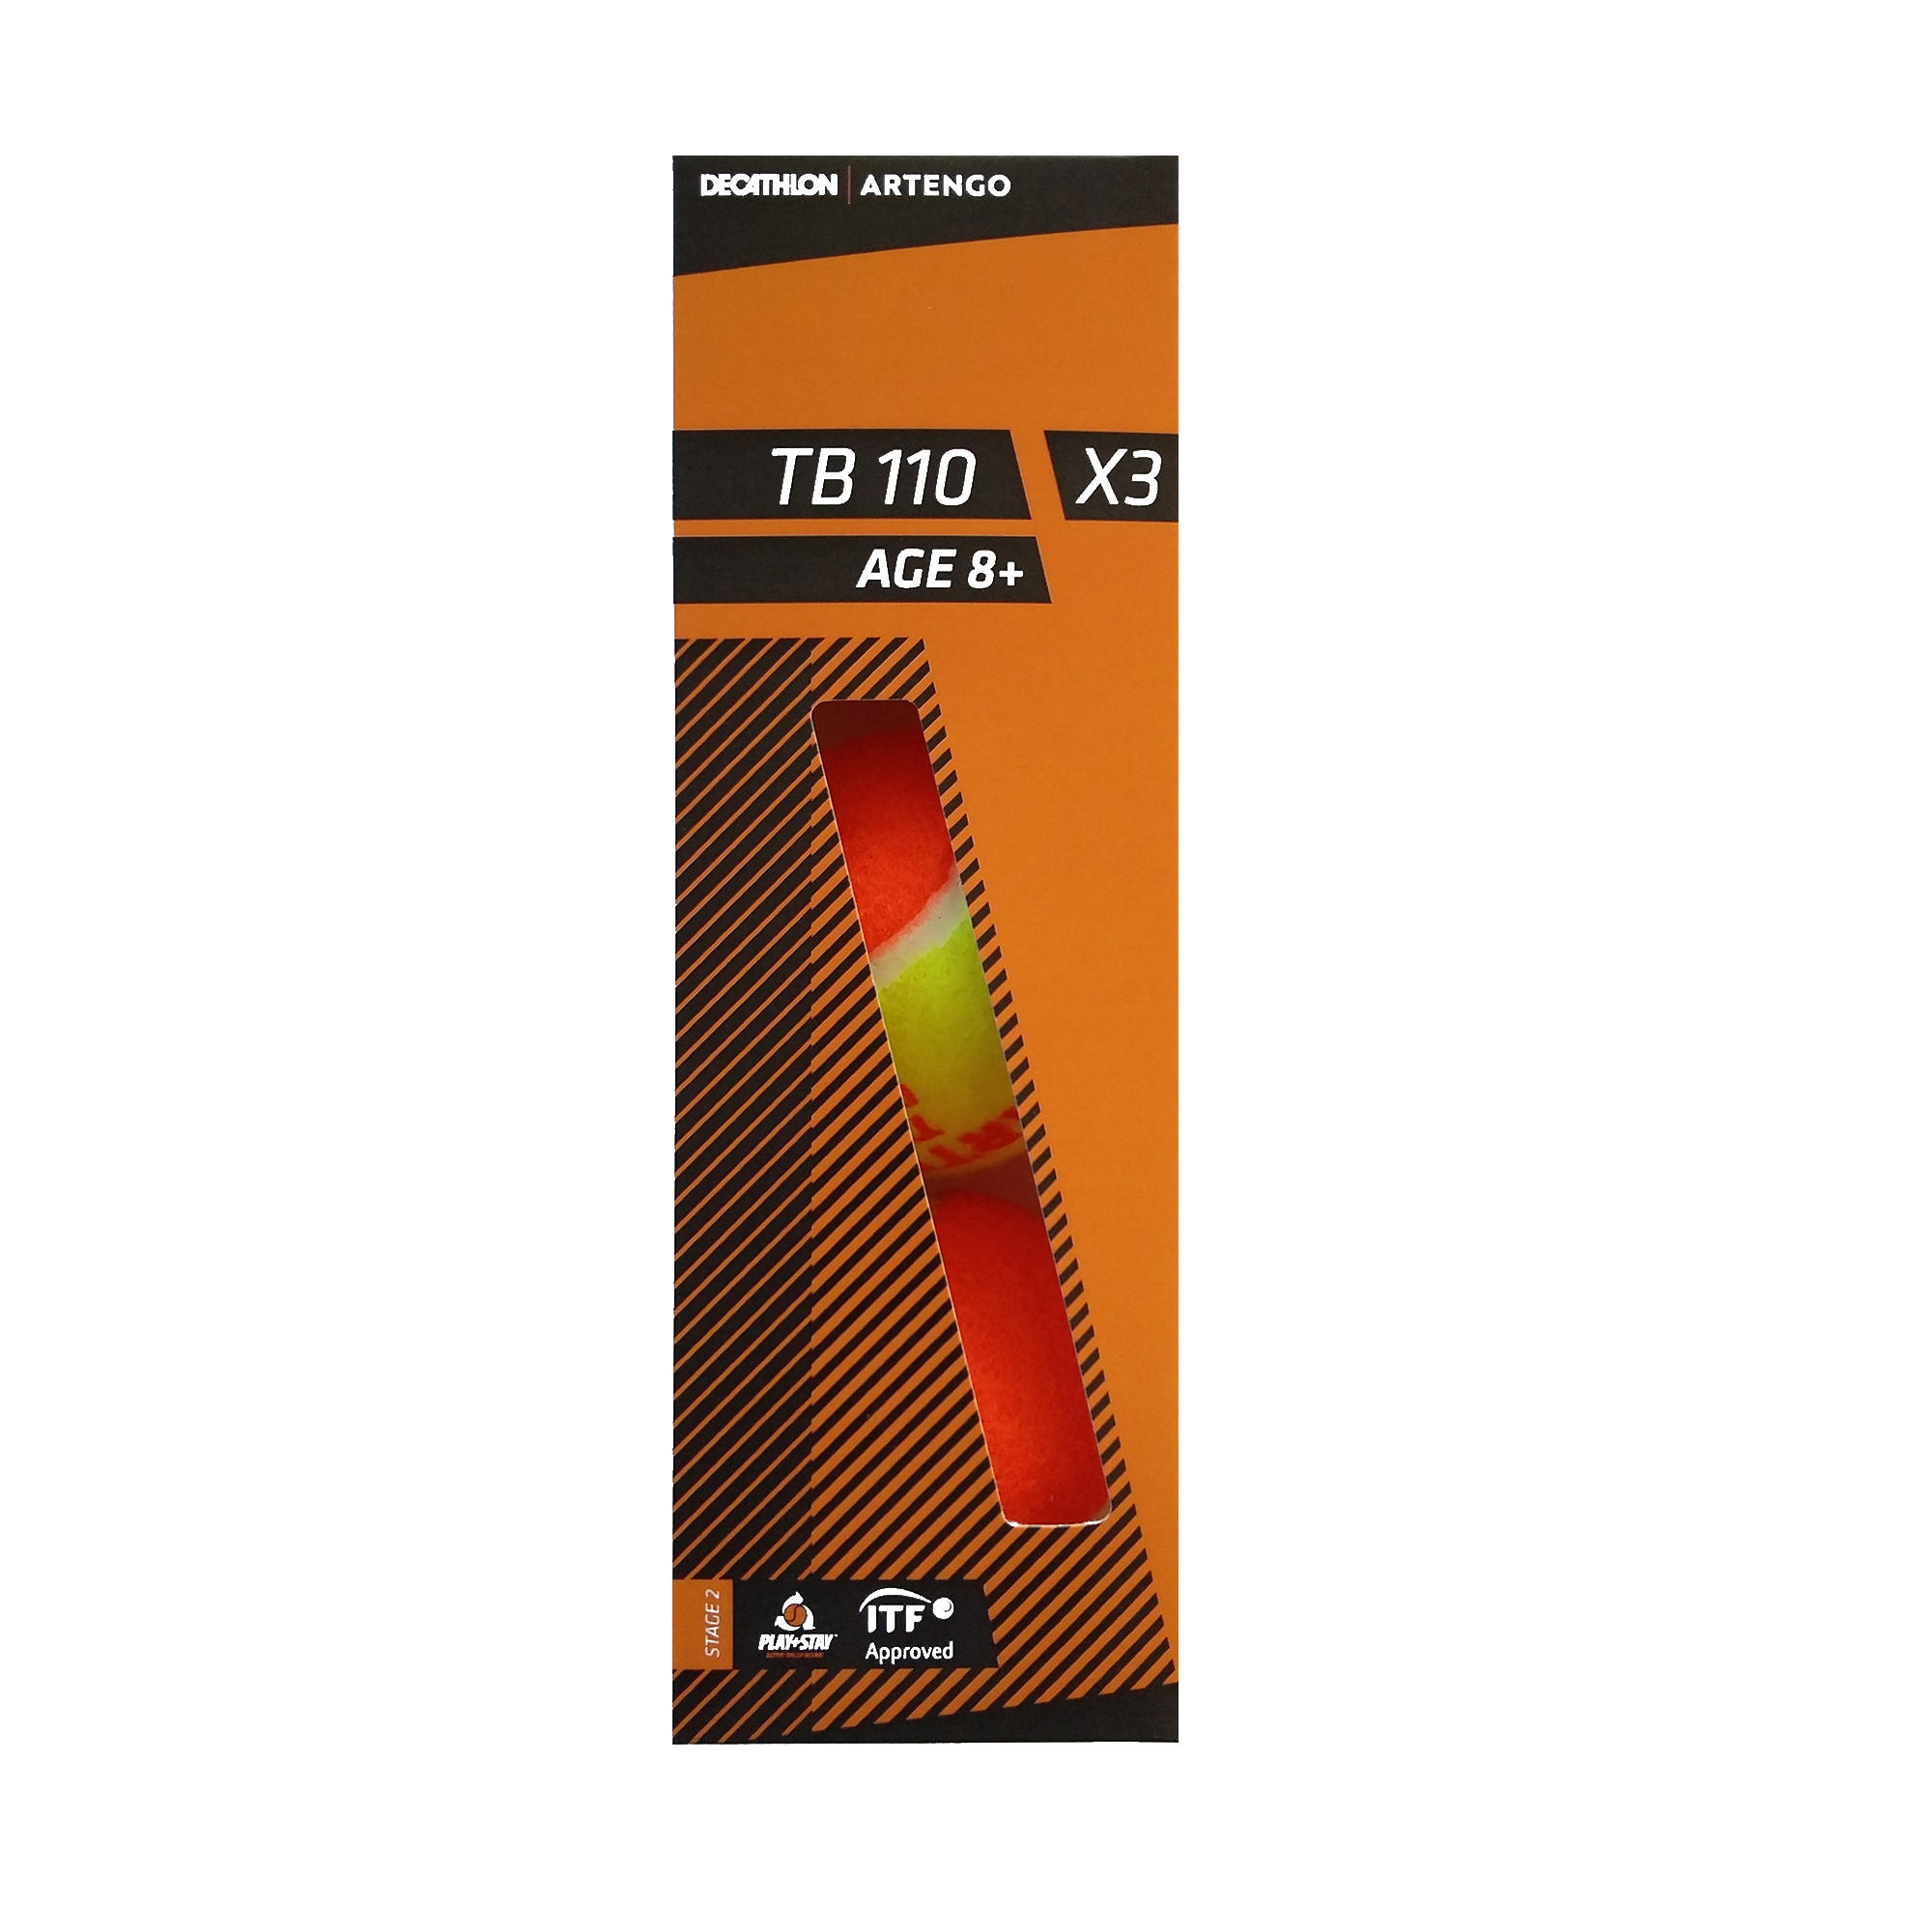 TB110 tennis ball 3-pack - ARTENGO